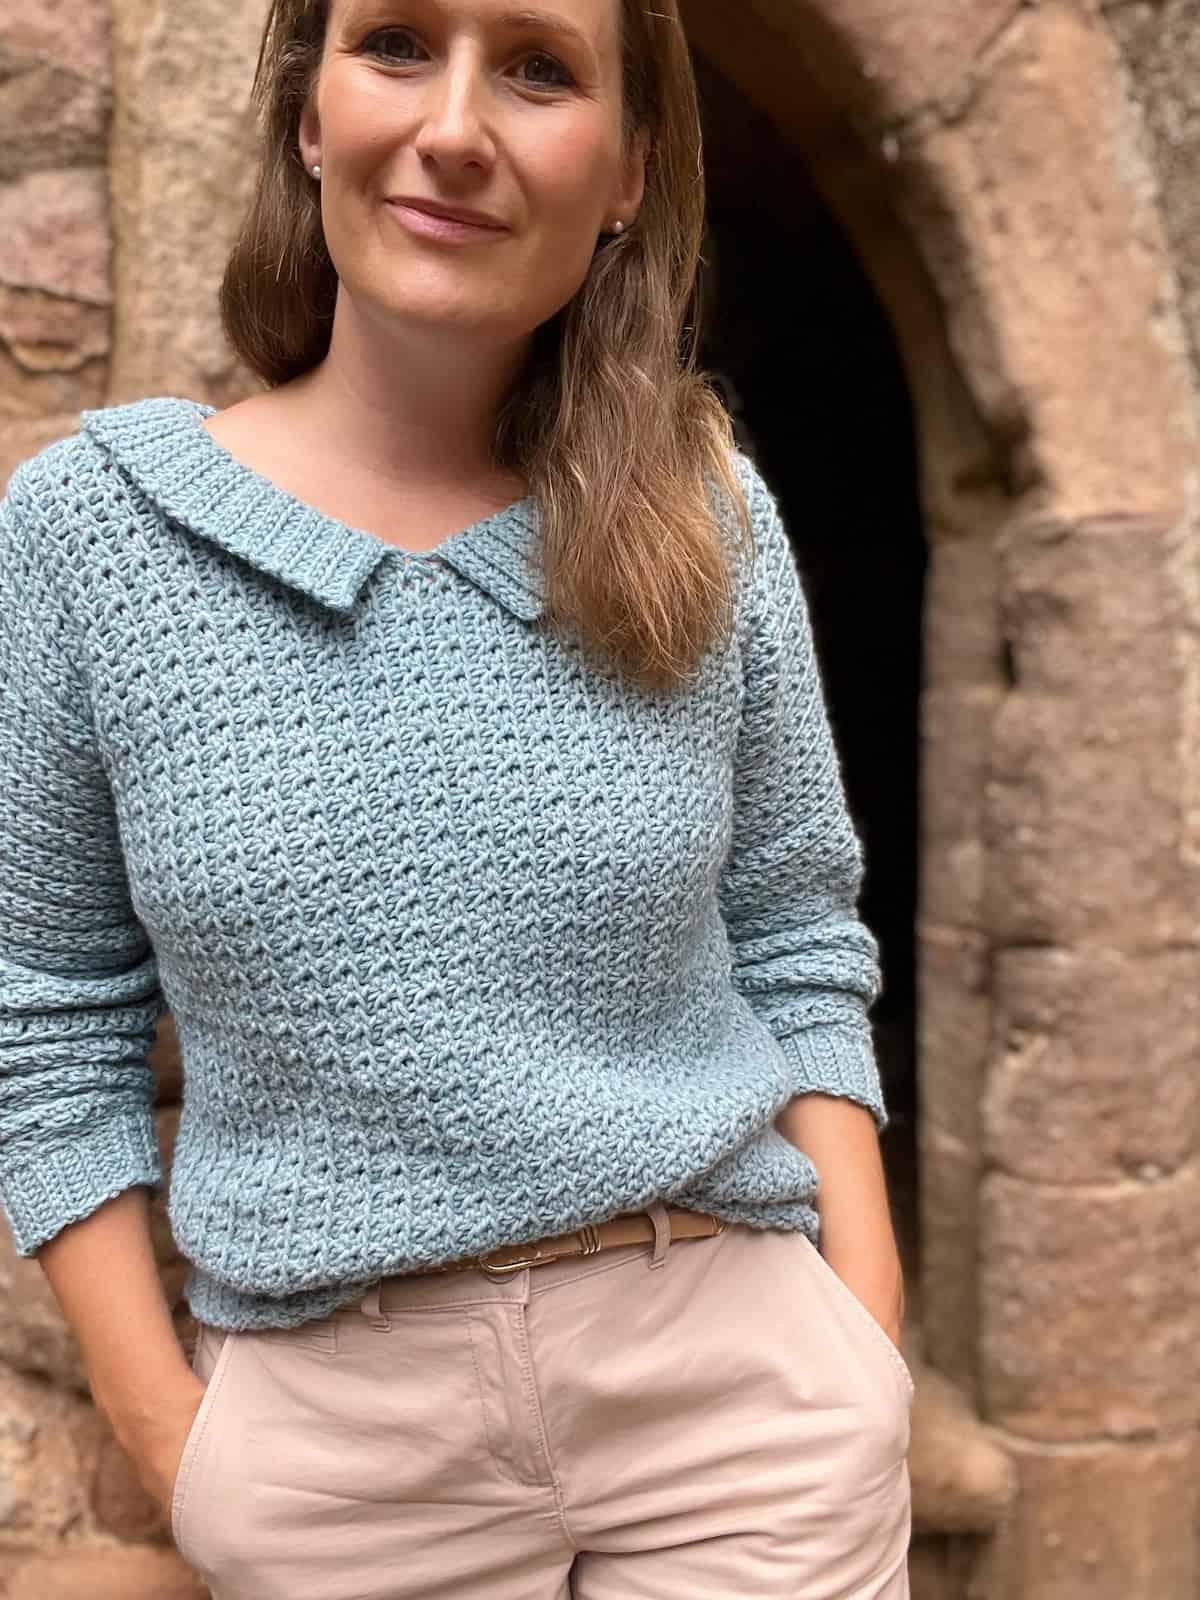 Woman wearing one piece crochet sweater pattern.